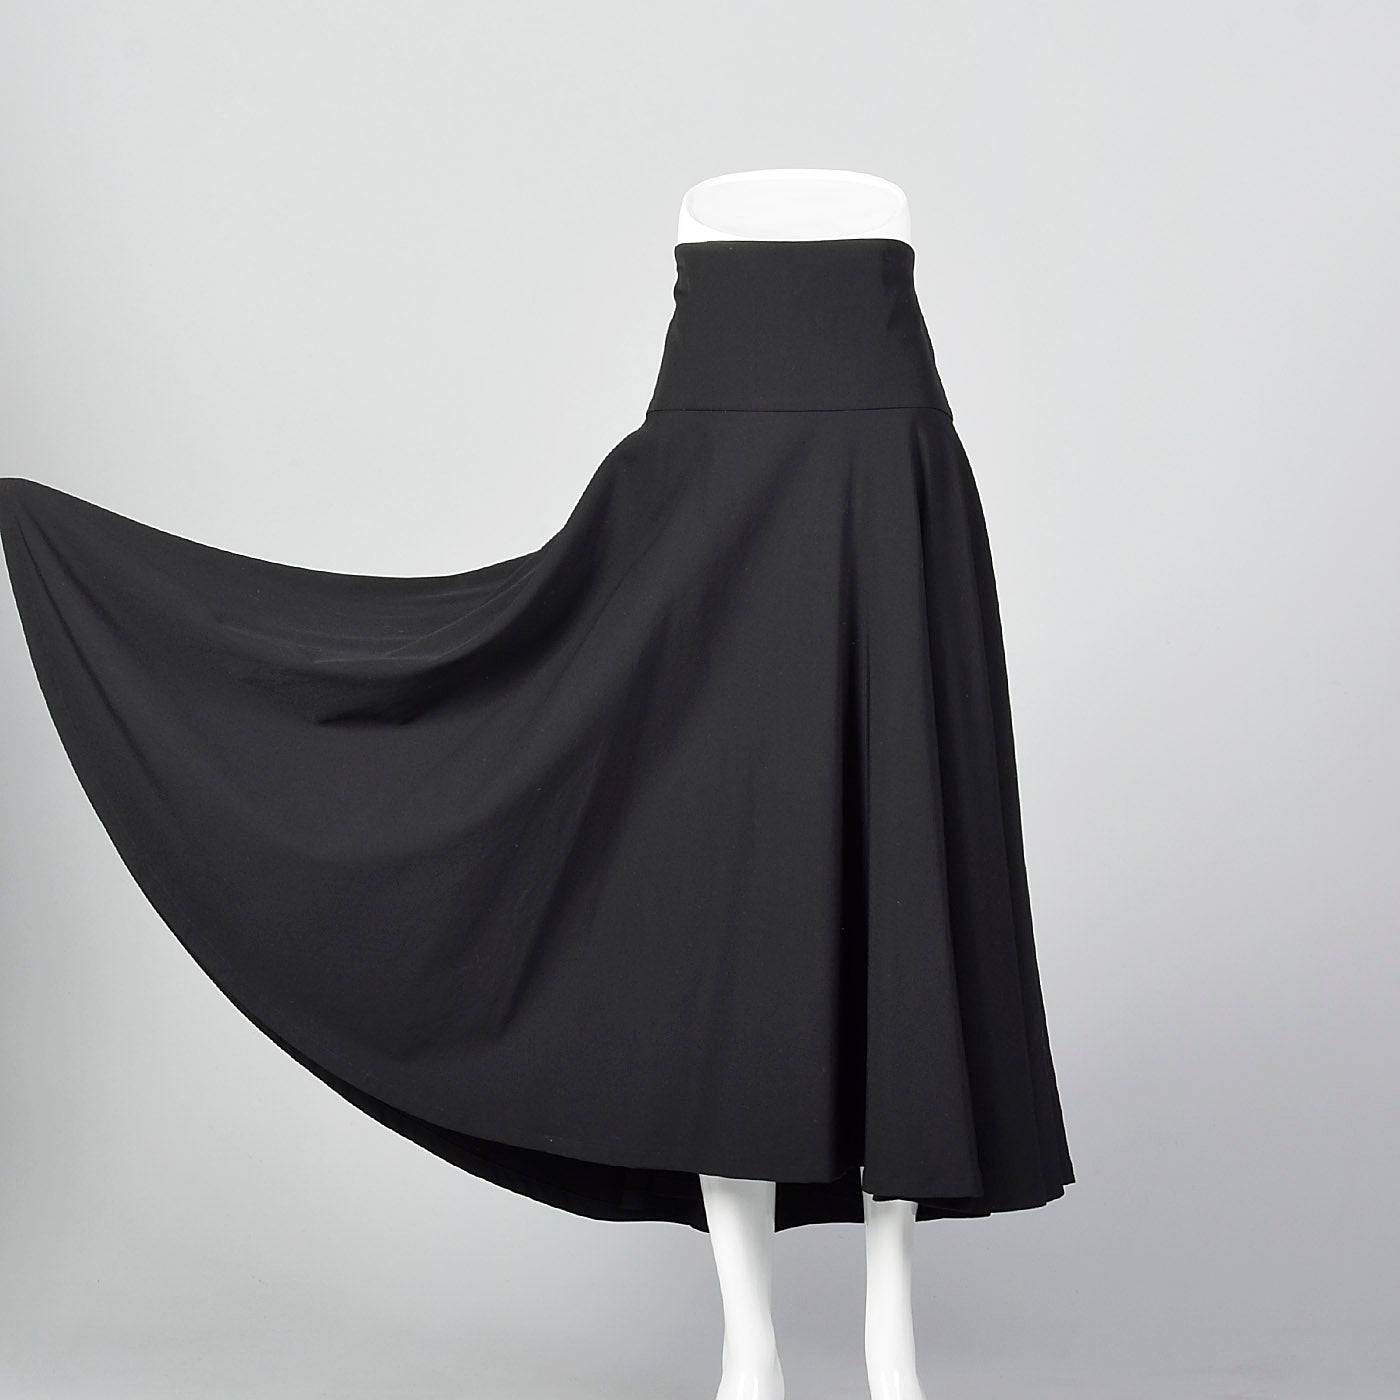 2010s Yohji Yamamoto Black Full Circle Skirt with High Waist